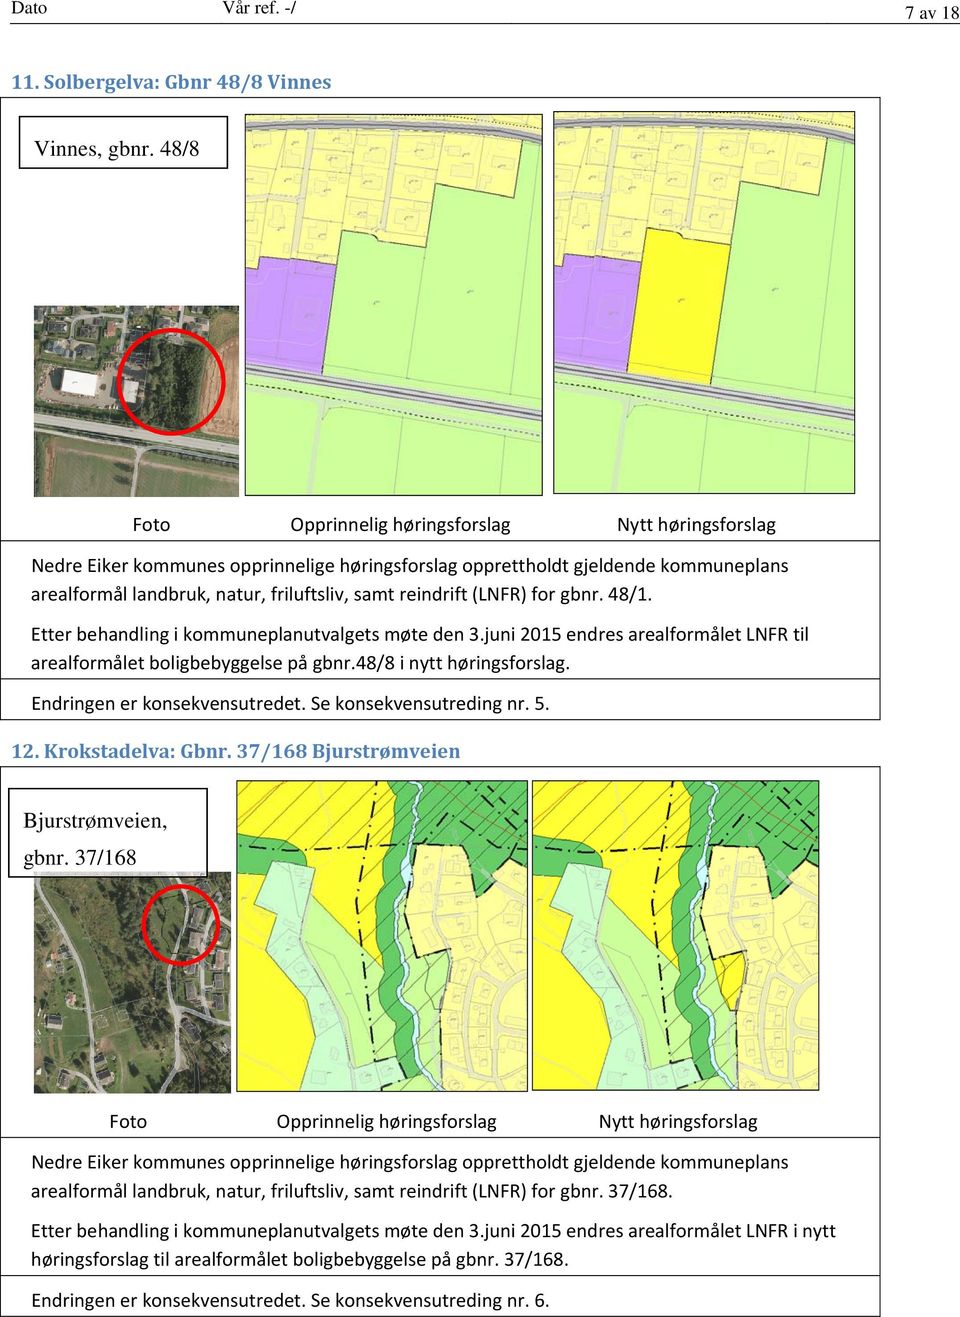 Etter behandling i kommuneplanutvalgets møte den 3.juni 2015 endres arealformålet LNFR til arealformålet boligbebyggelse på gbnr.48/8 i nytt høringsforslag. Endringen er konsekvensutredet.